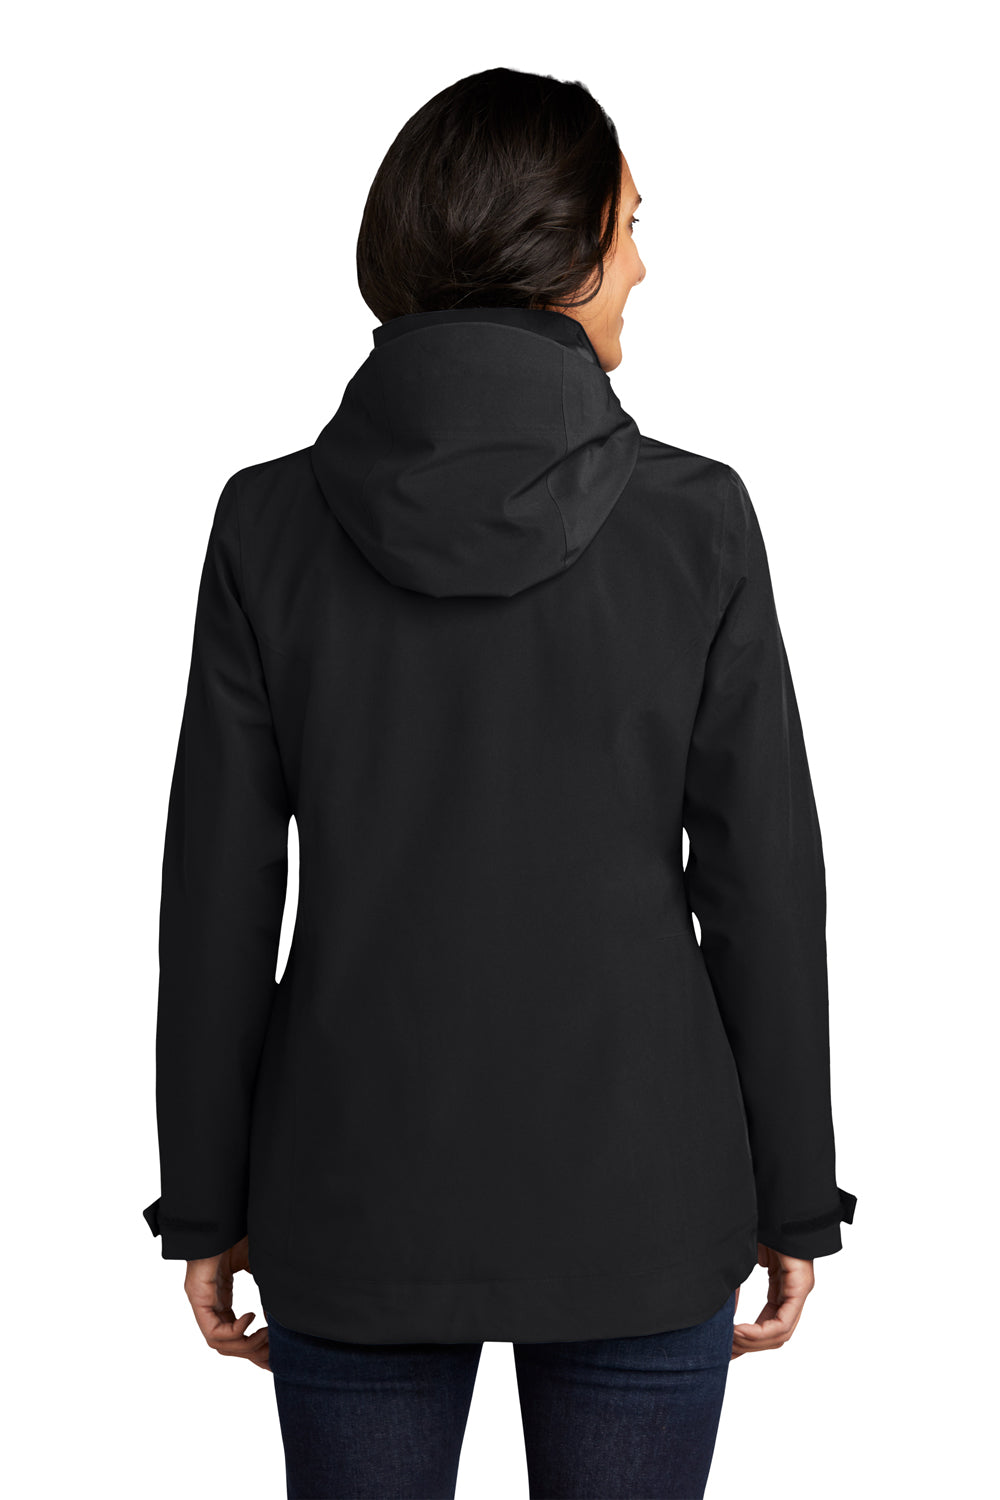 Eddie Bauer EB657 Womens WeatherEdge 3-in-1 Water Resistant Full Zip Hooded Jacket Black/Storm Grey Model Back